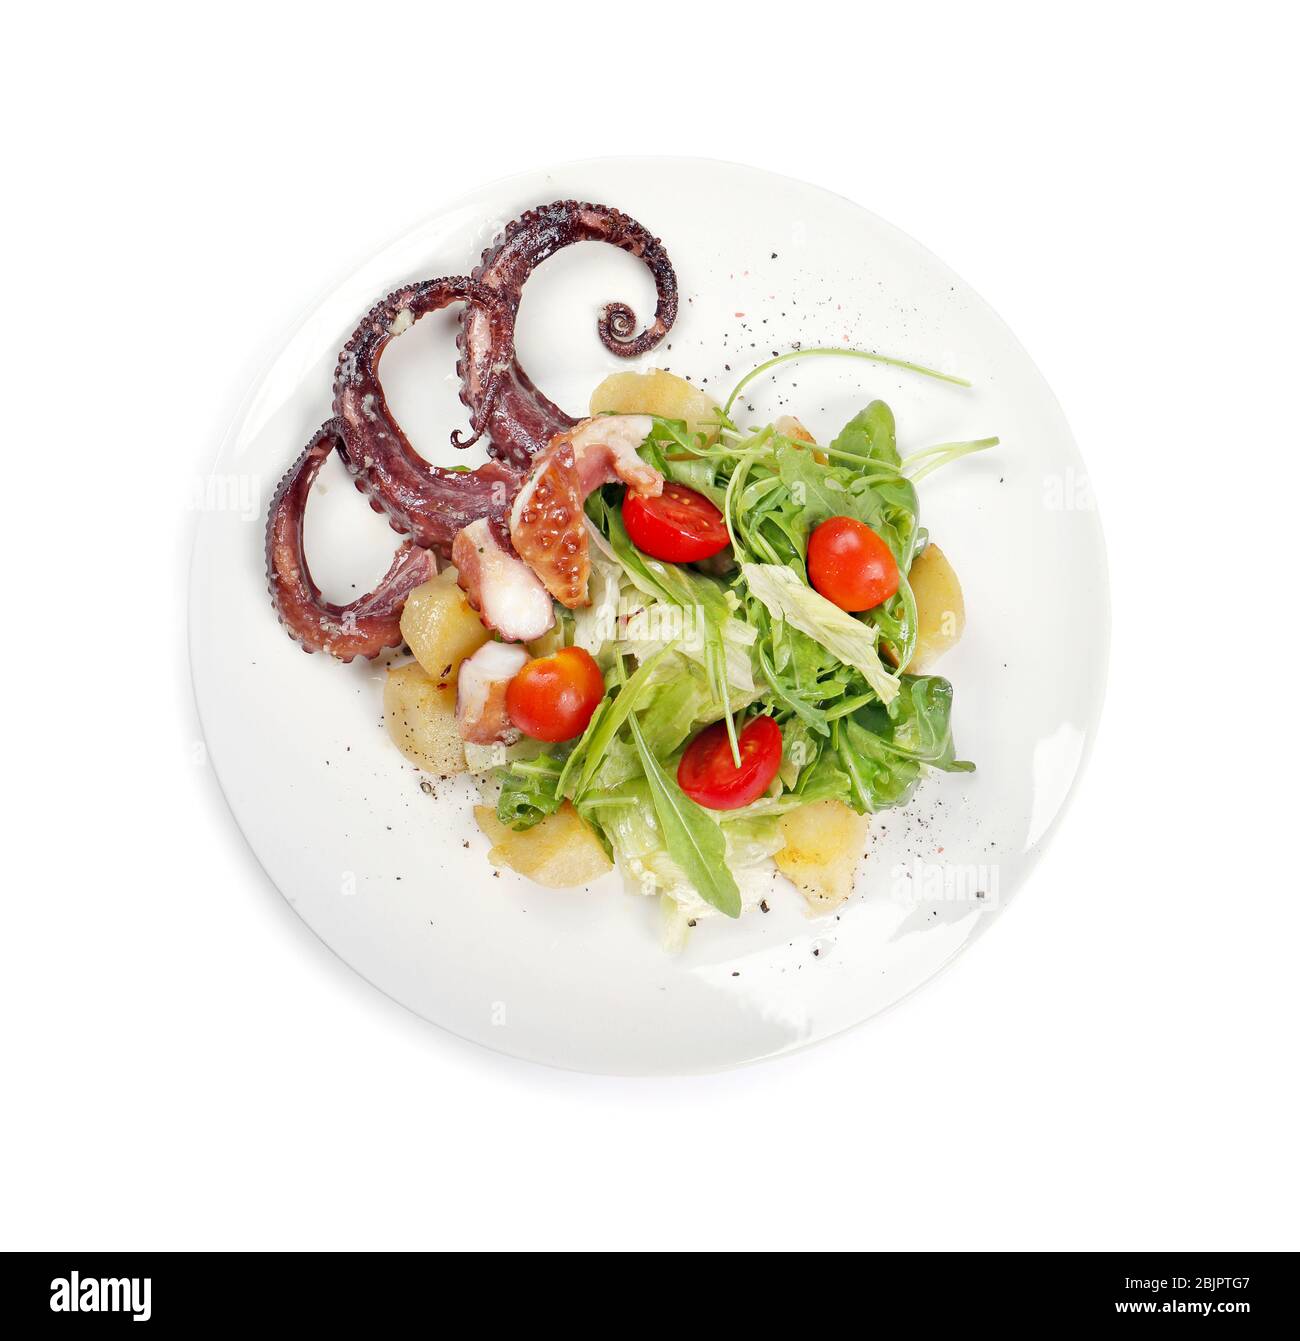 Plato de sabrosa ensalada caliente con pulpo sobre fondo blanco, vista superior Foto de stock